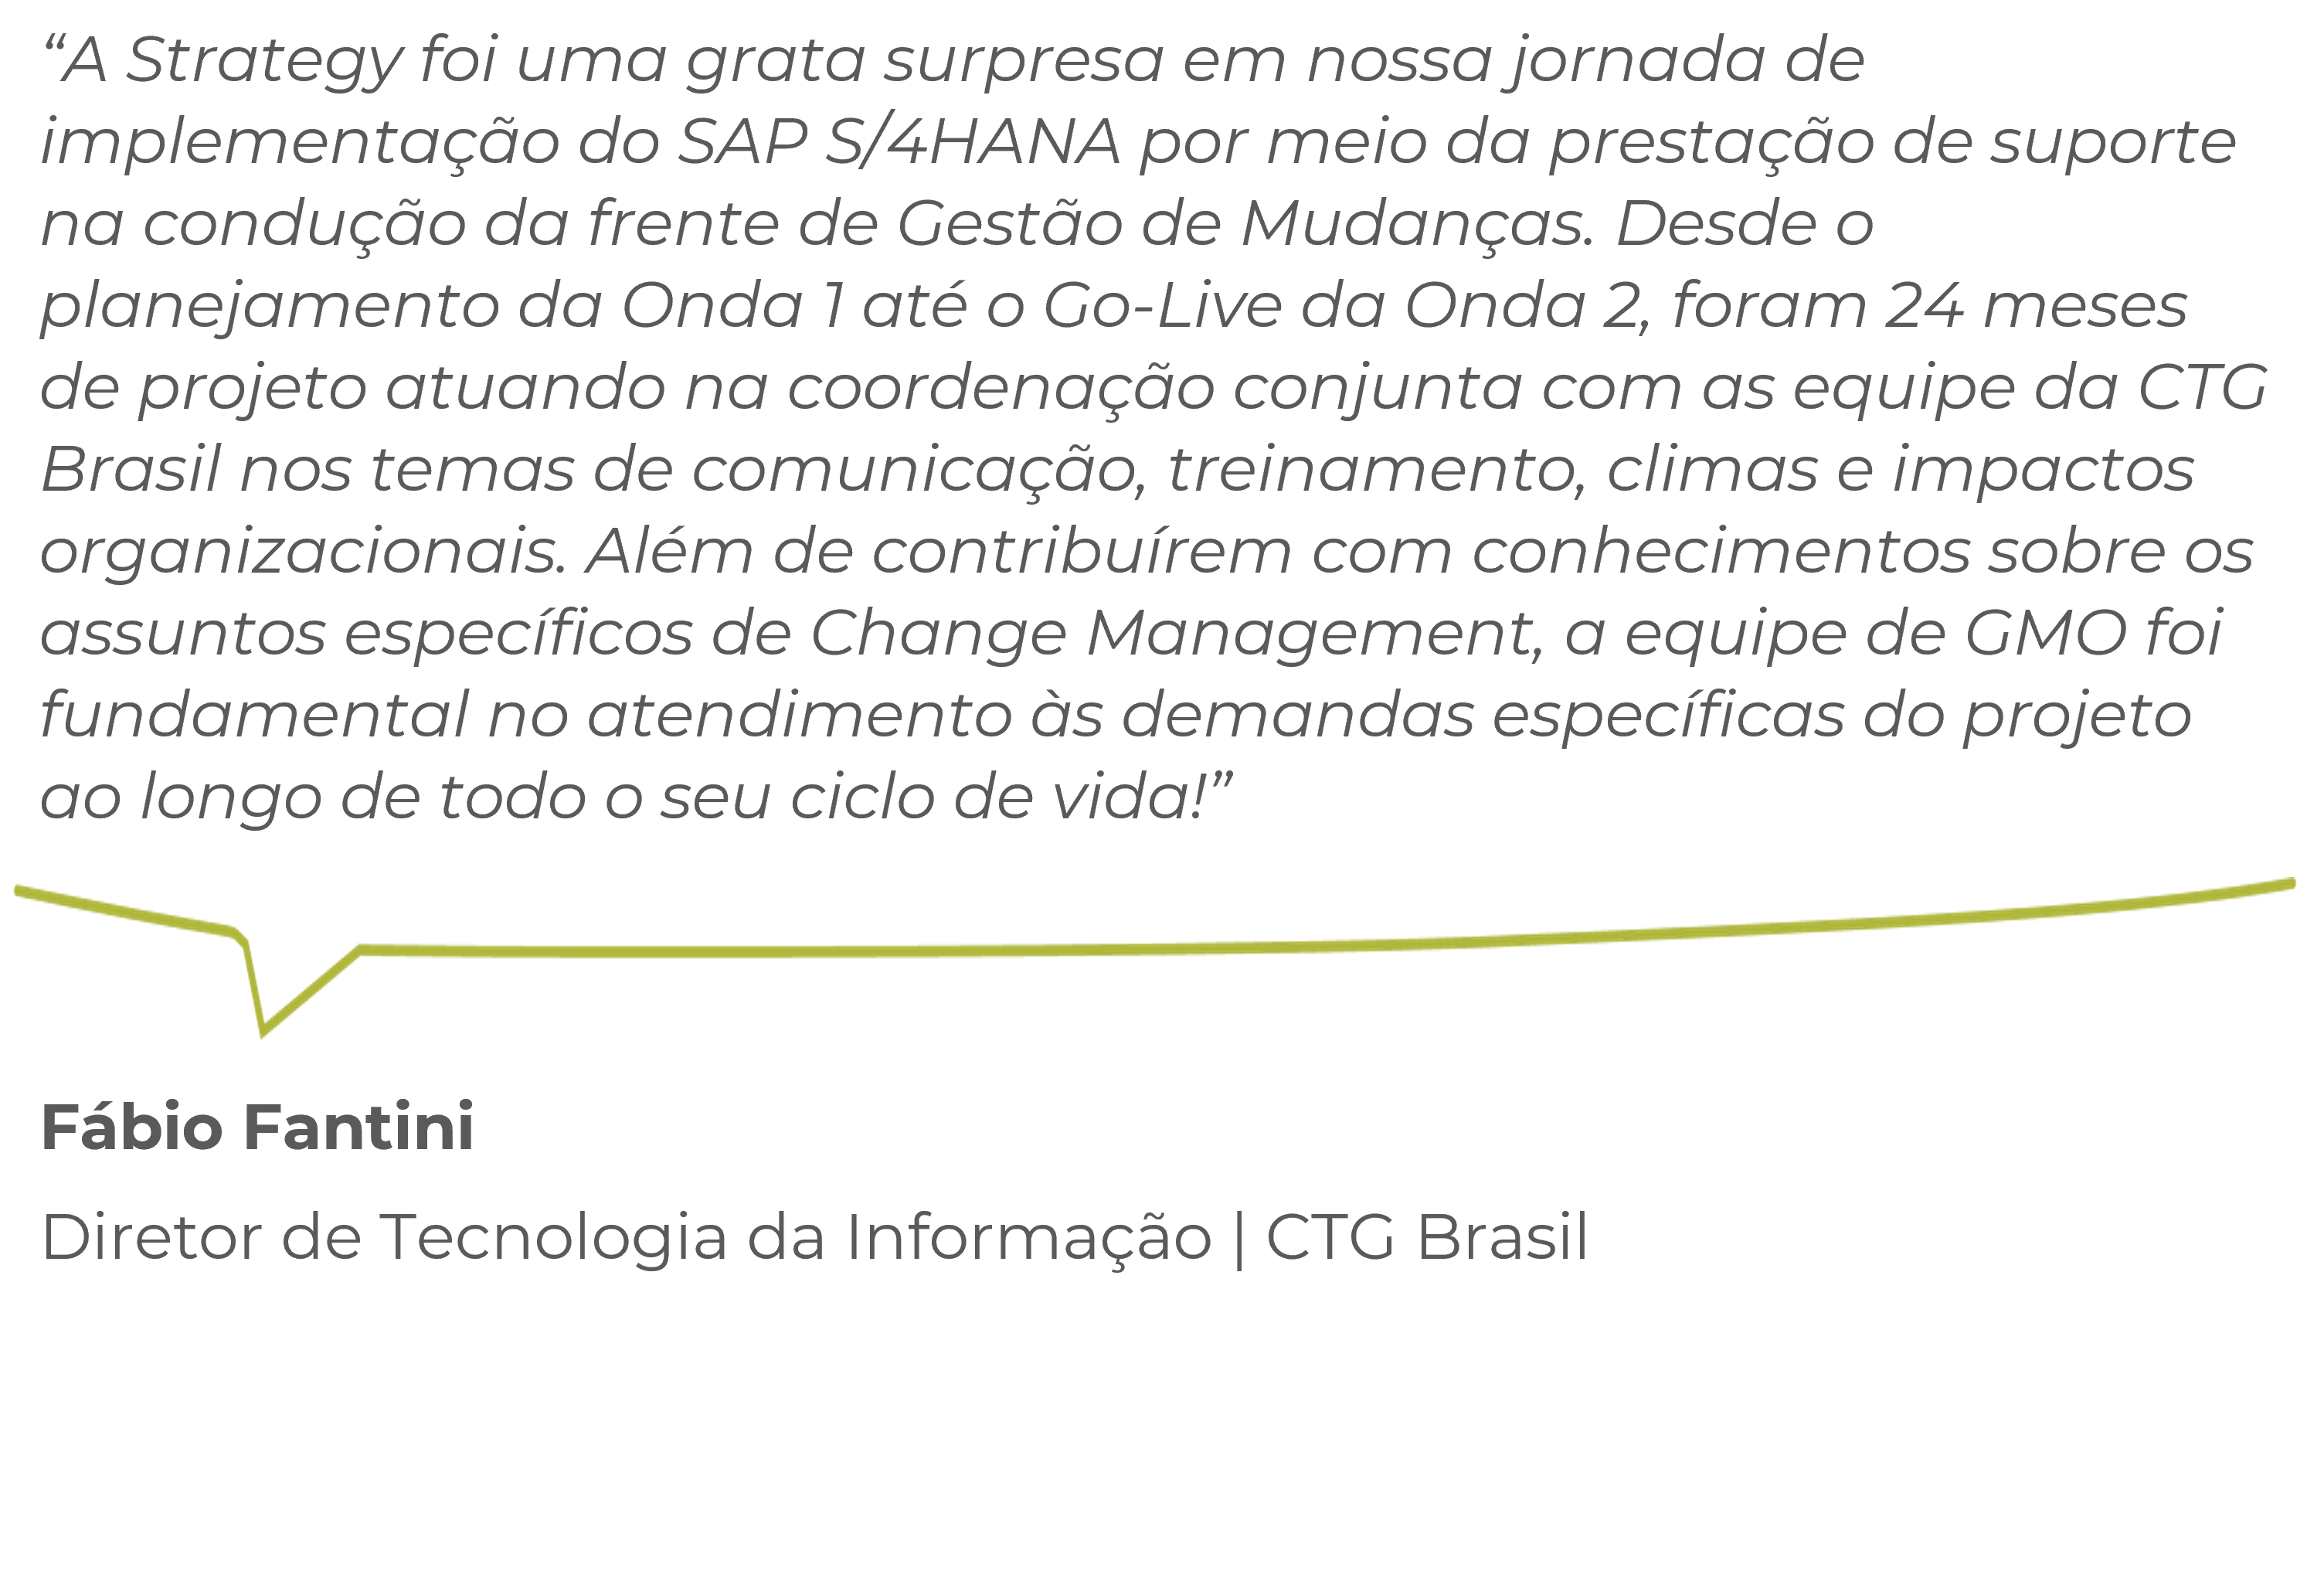 Fábio Fantini | Diretor de Tecnologia da Informação | CTG Brasil 